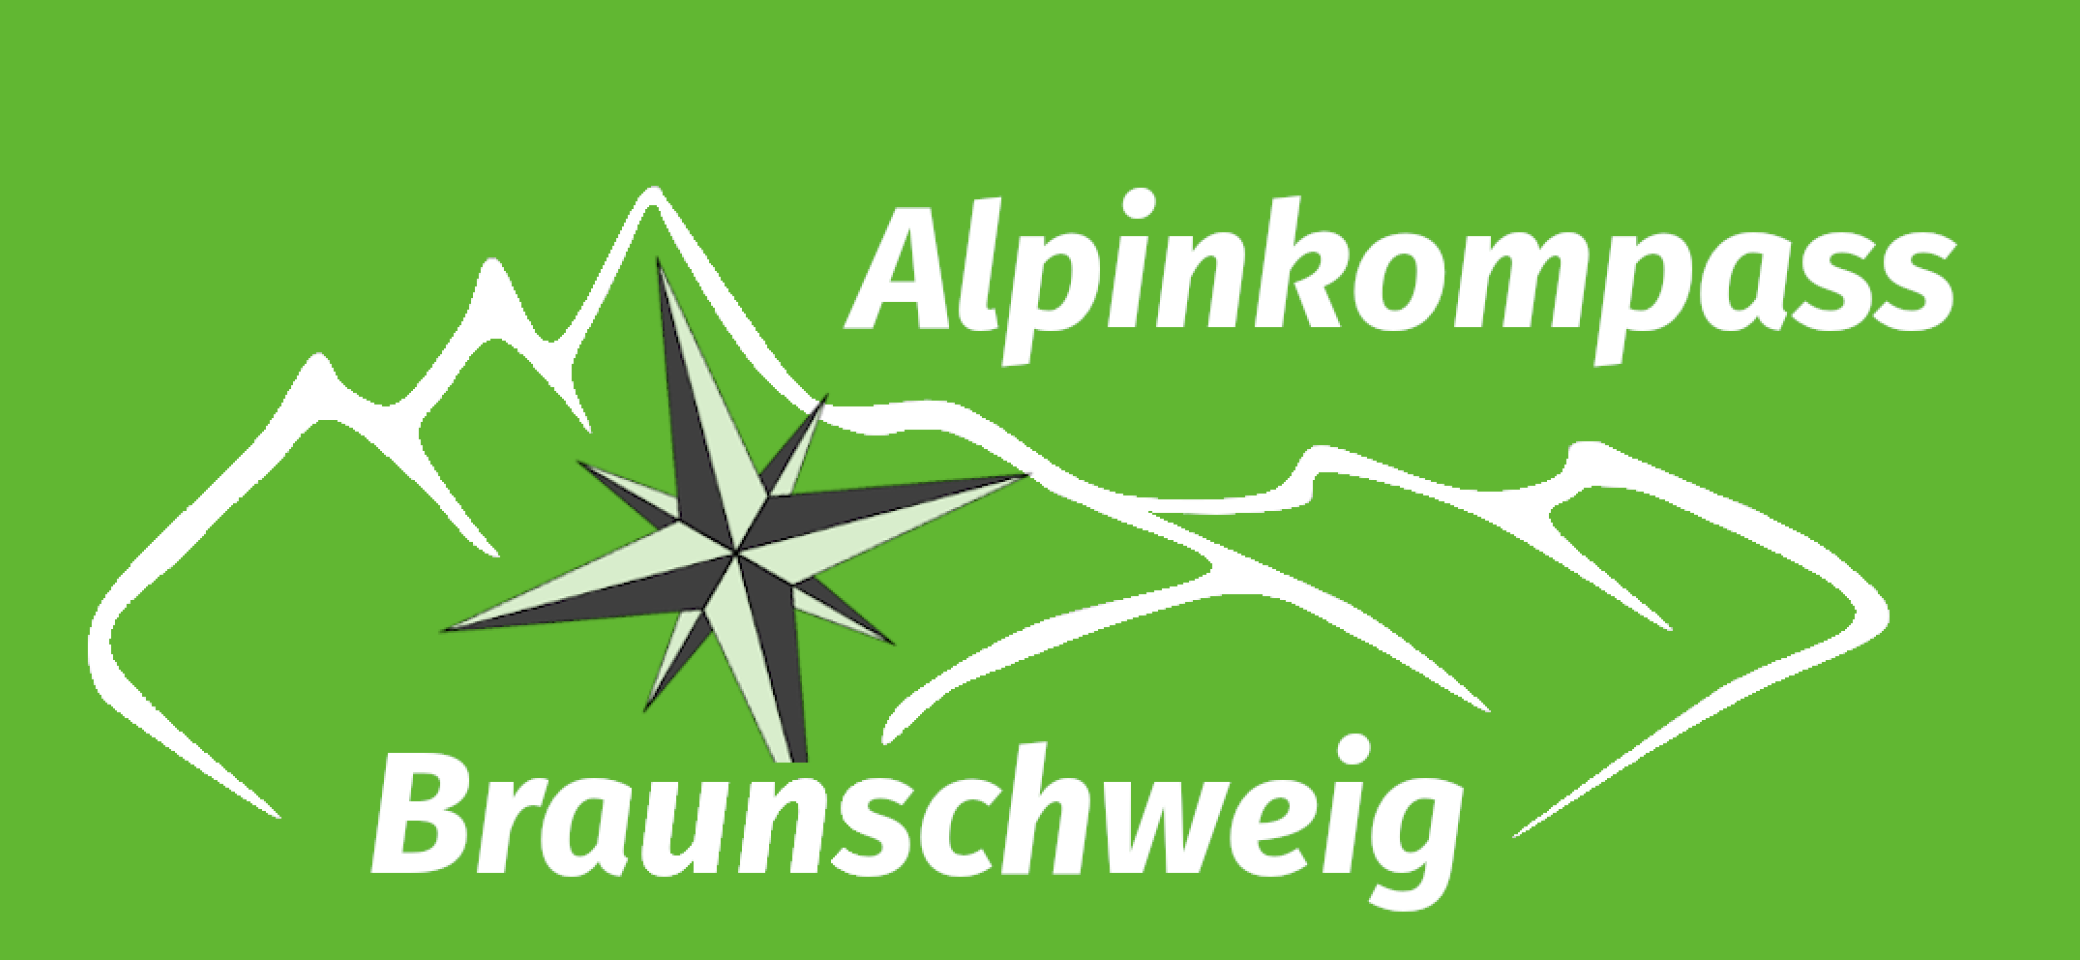 Logo - Alpinkompass Braunschweig grün | © Sektion Braunschweig